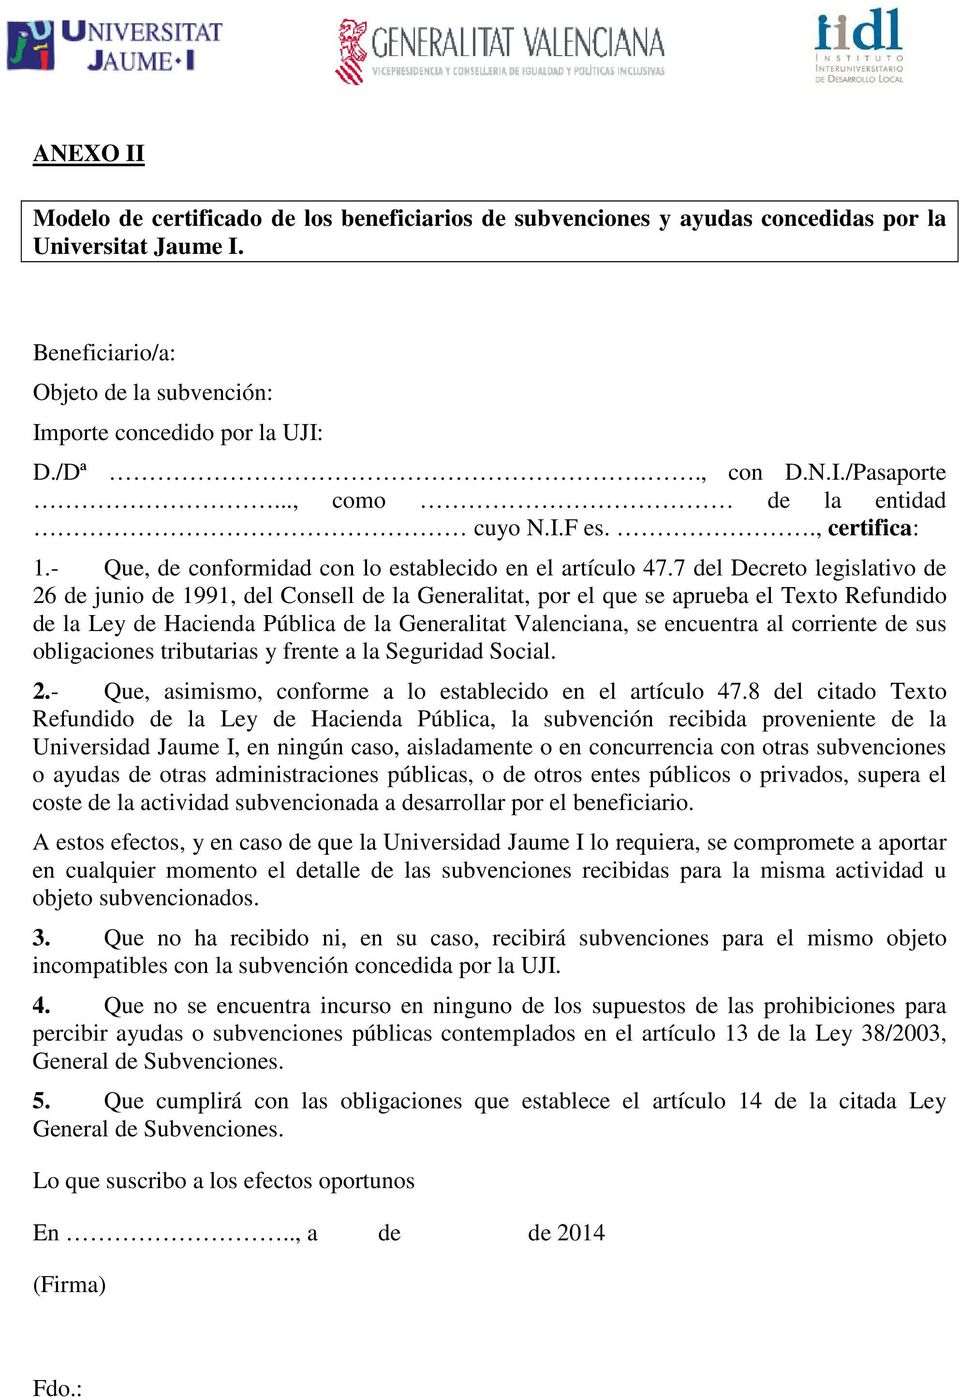 7 del Decreto legislativo de 26 de junio de 1991, del Consell de la Generalitat, por el que se aprueba el Texto Refundido de la Ley de Hacienda Pública de la Generalitat Valenciana, se encuentra al